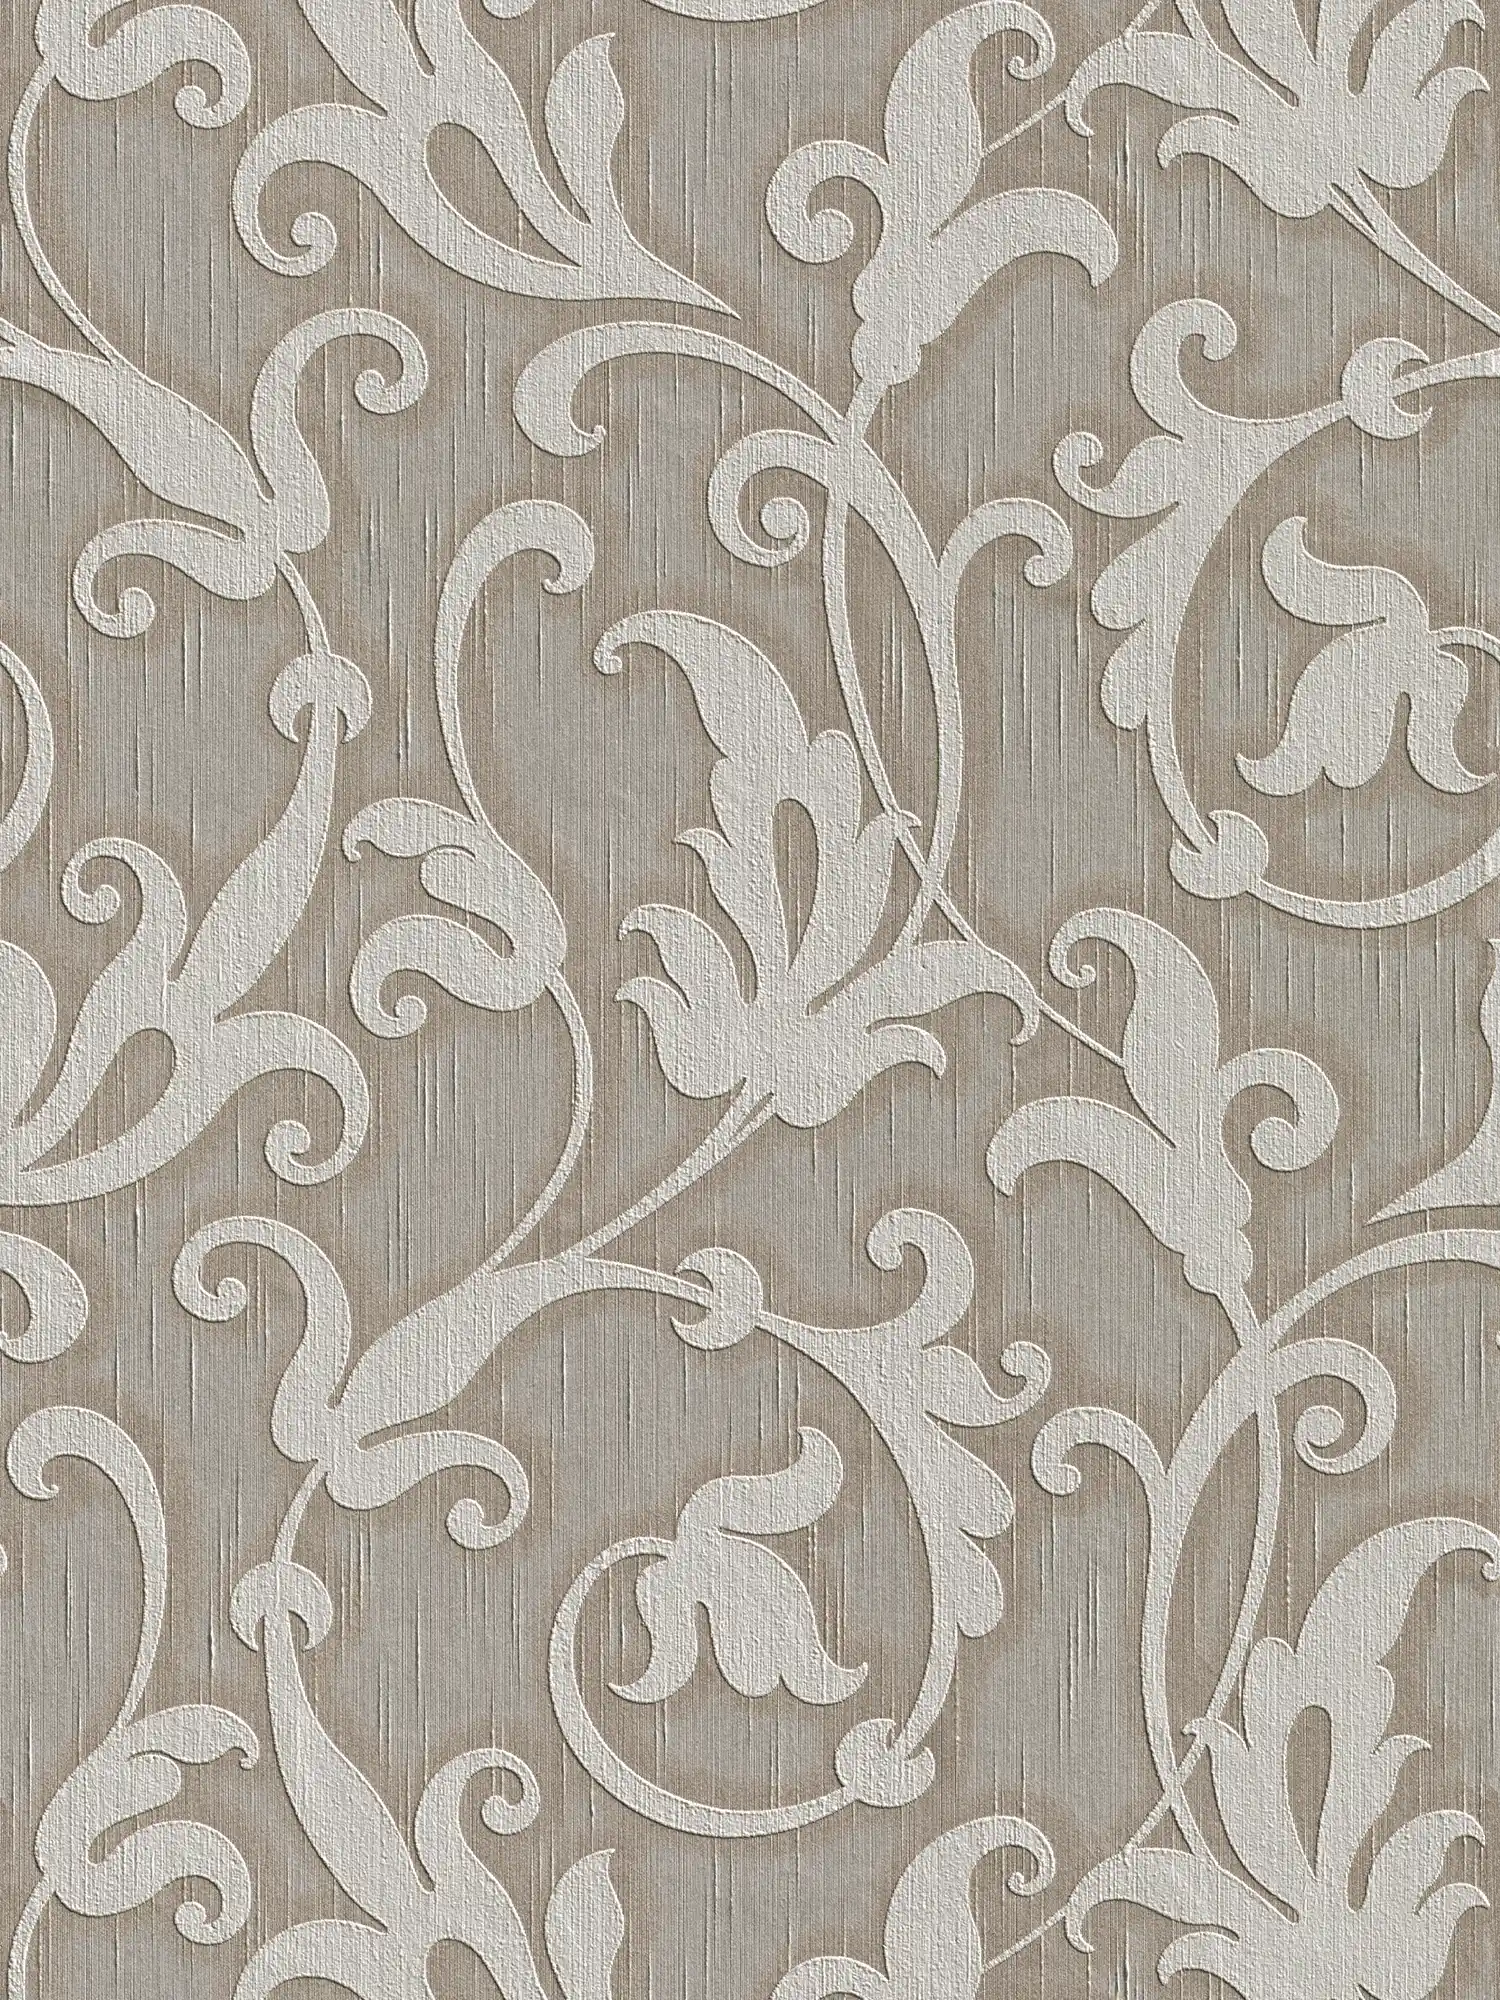 papier peint en papier ornemental Premium avec structure textile & motif en relief - gris, marron
